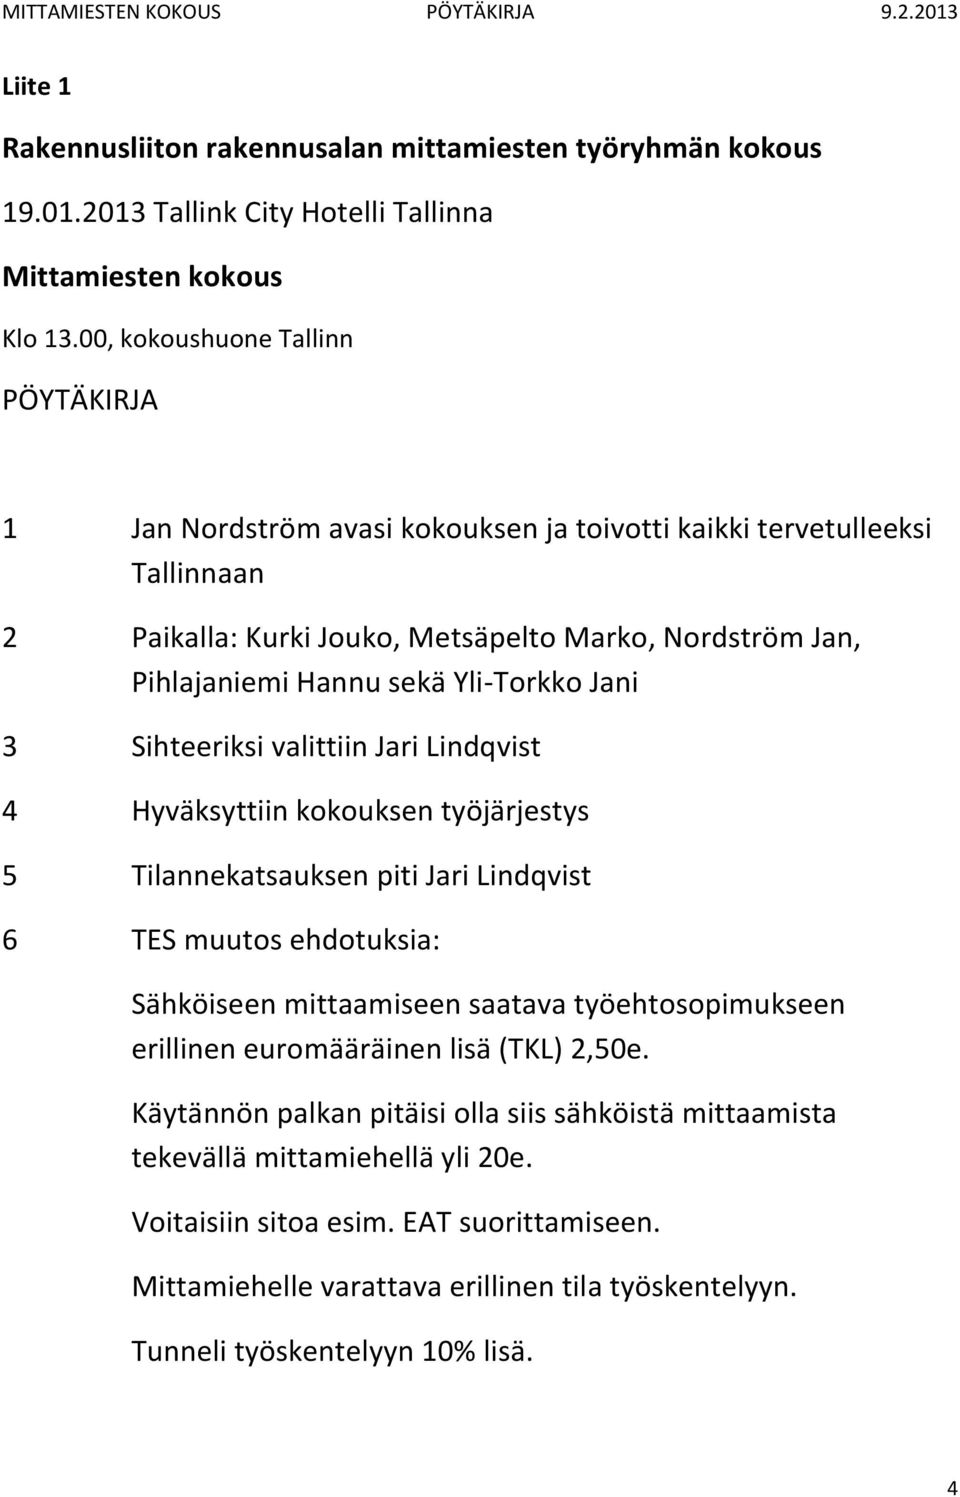 Yli-Torkko Jani 3 Sihteeriksi valittiin Jari Lindqvist 4 Hyväksyttiin kokouksen työjärjestys 5 Tilannekatsauksen piti Jari Lindqvist 6 TES muutos ehdotuksia: Sähköiseen mittaamiseen saatava